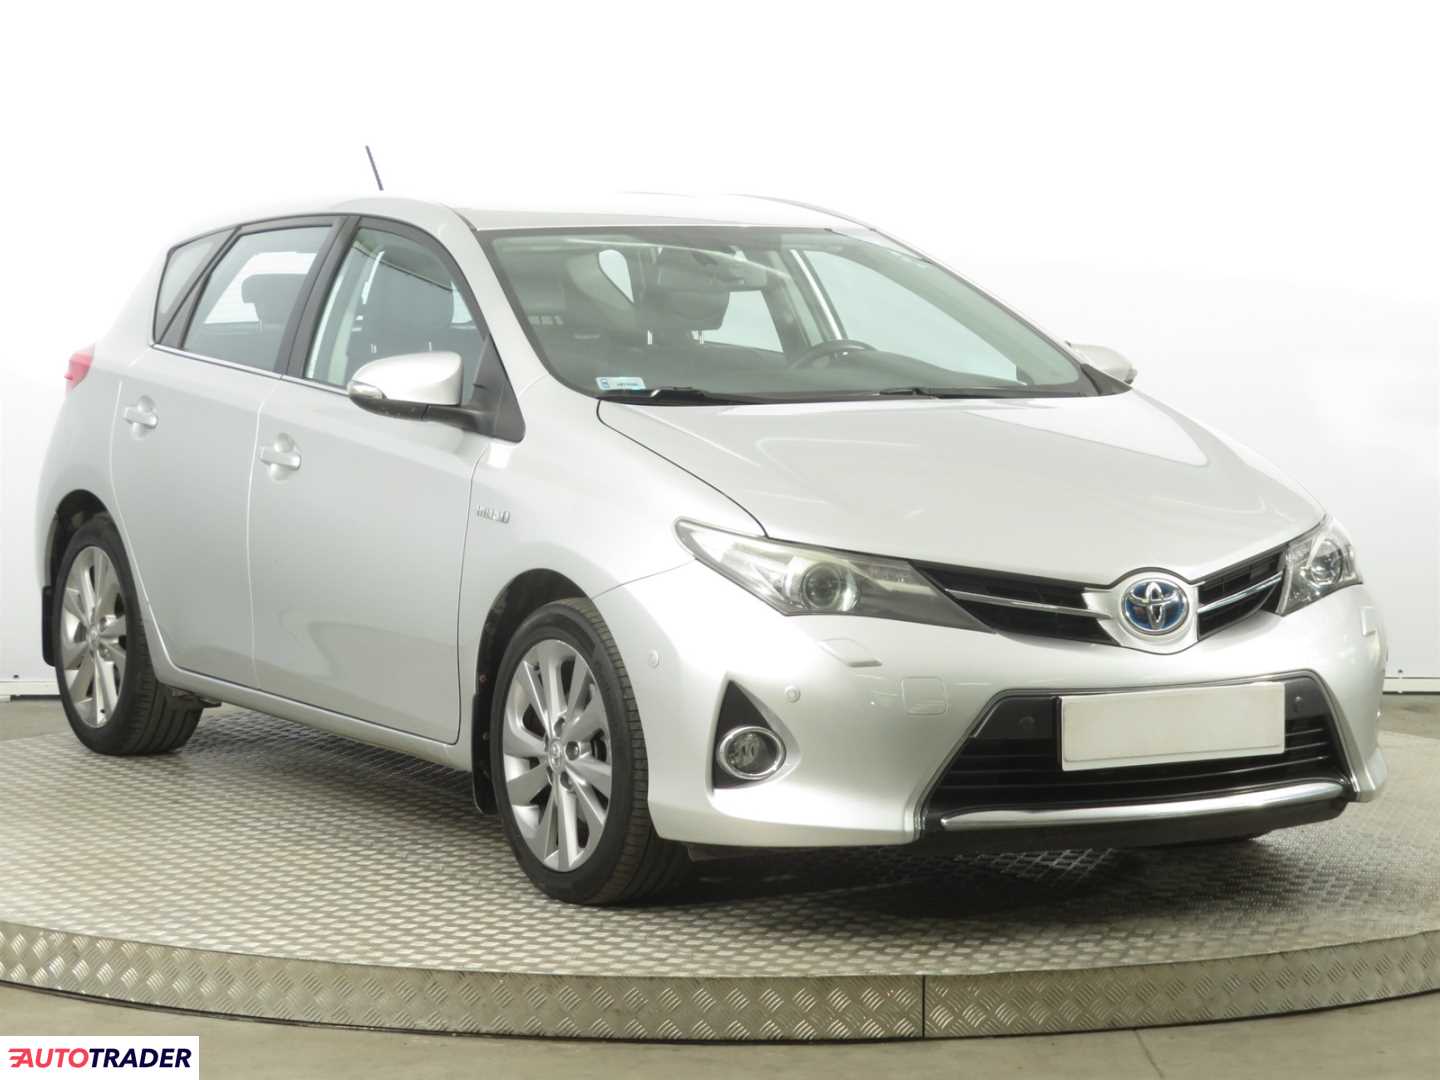 Toyota Auris 2013 1.8 134 KM